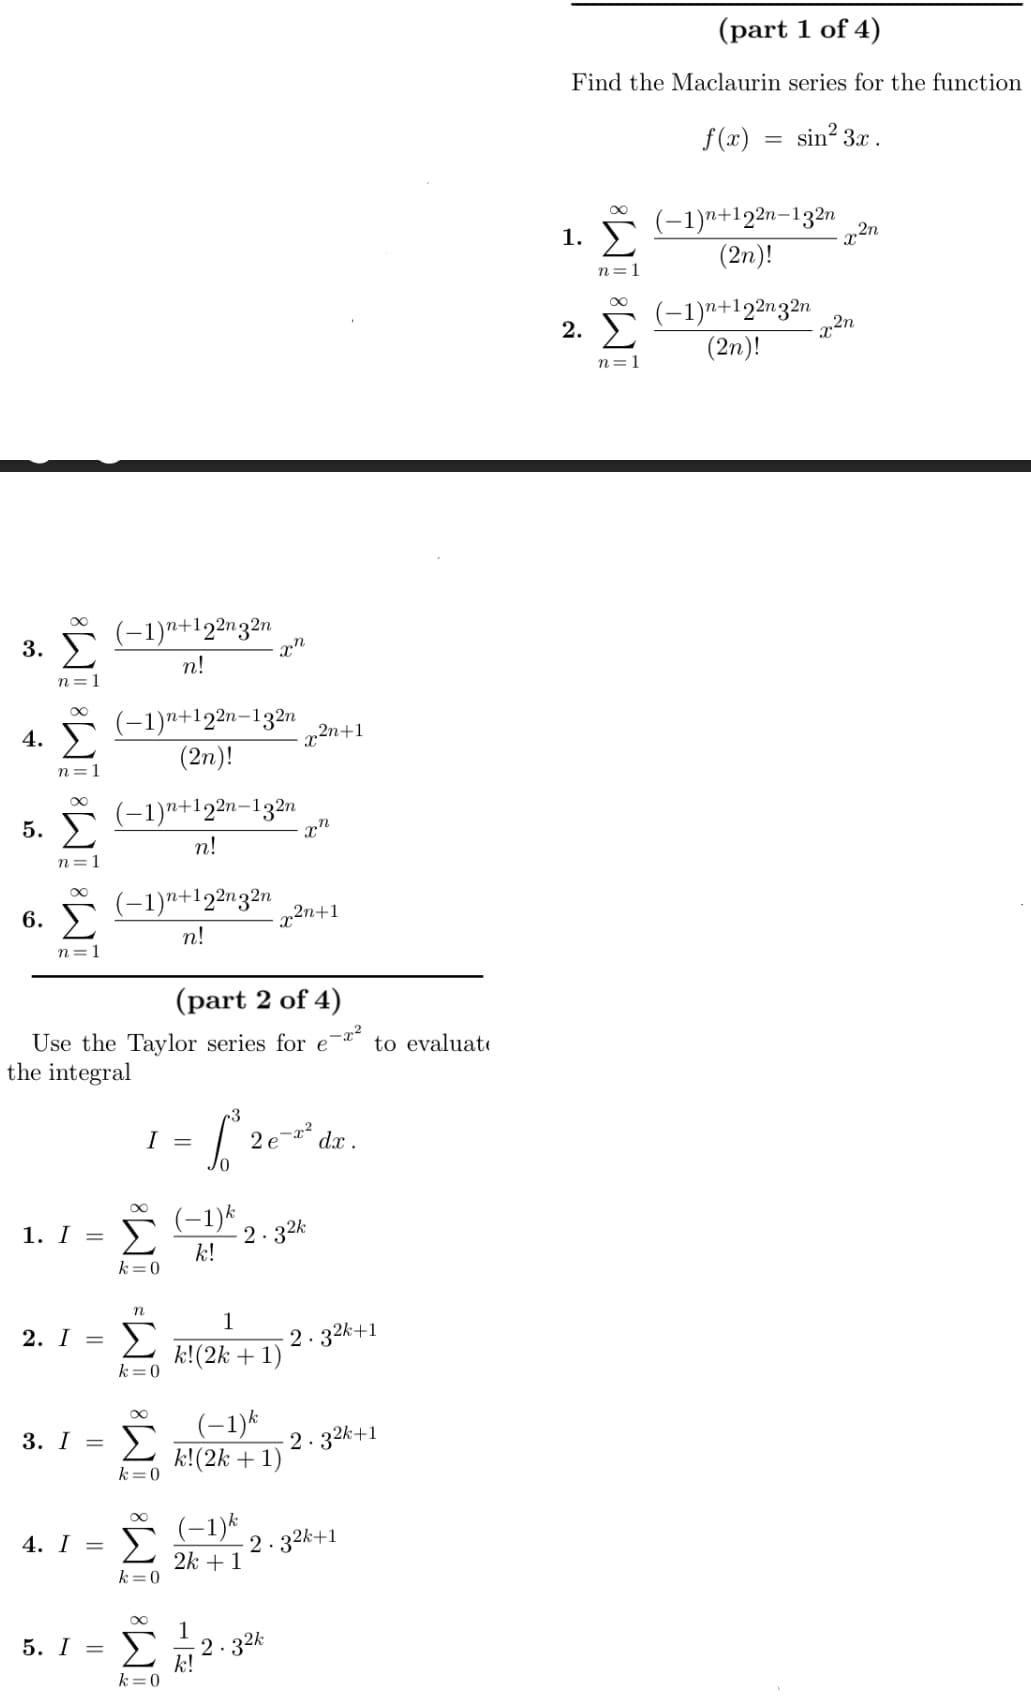 3.
4.
M M M8 M8
5. Σ
6.
n=1
1. I =
2. I =
3. I =
(-1)n+122n32n
n!
(-1)n+122n-132n
(2η)!
5. I =
(−1)n+122n-132n
n!
(-1)n+122n32n
n!
(part 2 of 4)
Use the Taylor series for e
the integral
k = 0
I=
n
Σ
k = 0
Σ
k = 0
00
4. I = Σ
k = 0
- Σ
k = 0
an
(−1)k
k!
= 12erdr
1
k!(2k + 1)
1
(-1) k
k!(2k + 1)
2n+1
χη
x²n+1
-2.32k
-2.32k
k!
dx.
(-1) k
-2.32k+1
2k + 1
to evaluate
2.32k+1
-2.3²k+1
(part 1 of 4)
Find the Maclaurin series for the function
f(x) sin23x .
1. Σ
M8 M8
2.
n=1
=
(-1)n+122n-132n
(2η)!
(−1)n+122n32n
(2n)!
η 2η
22η